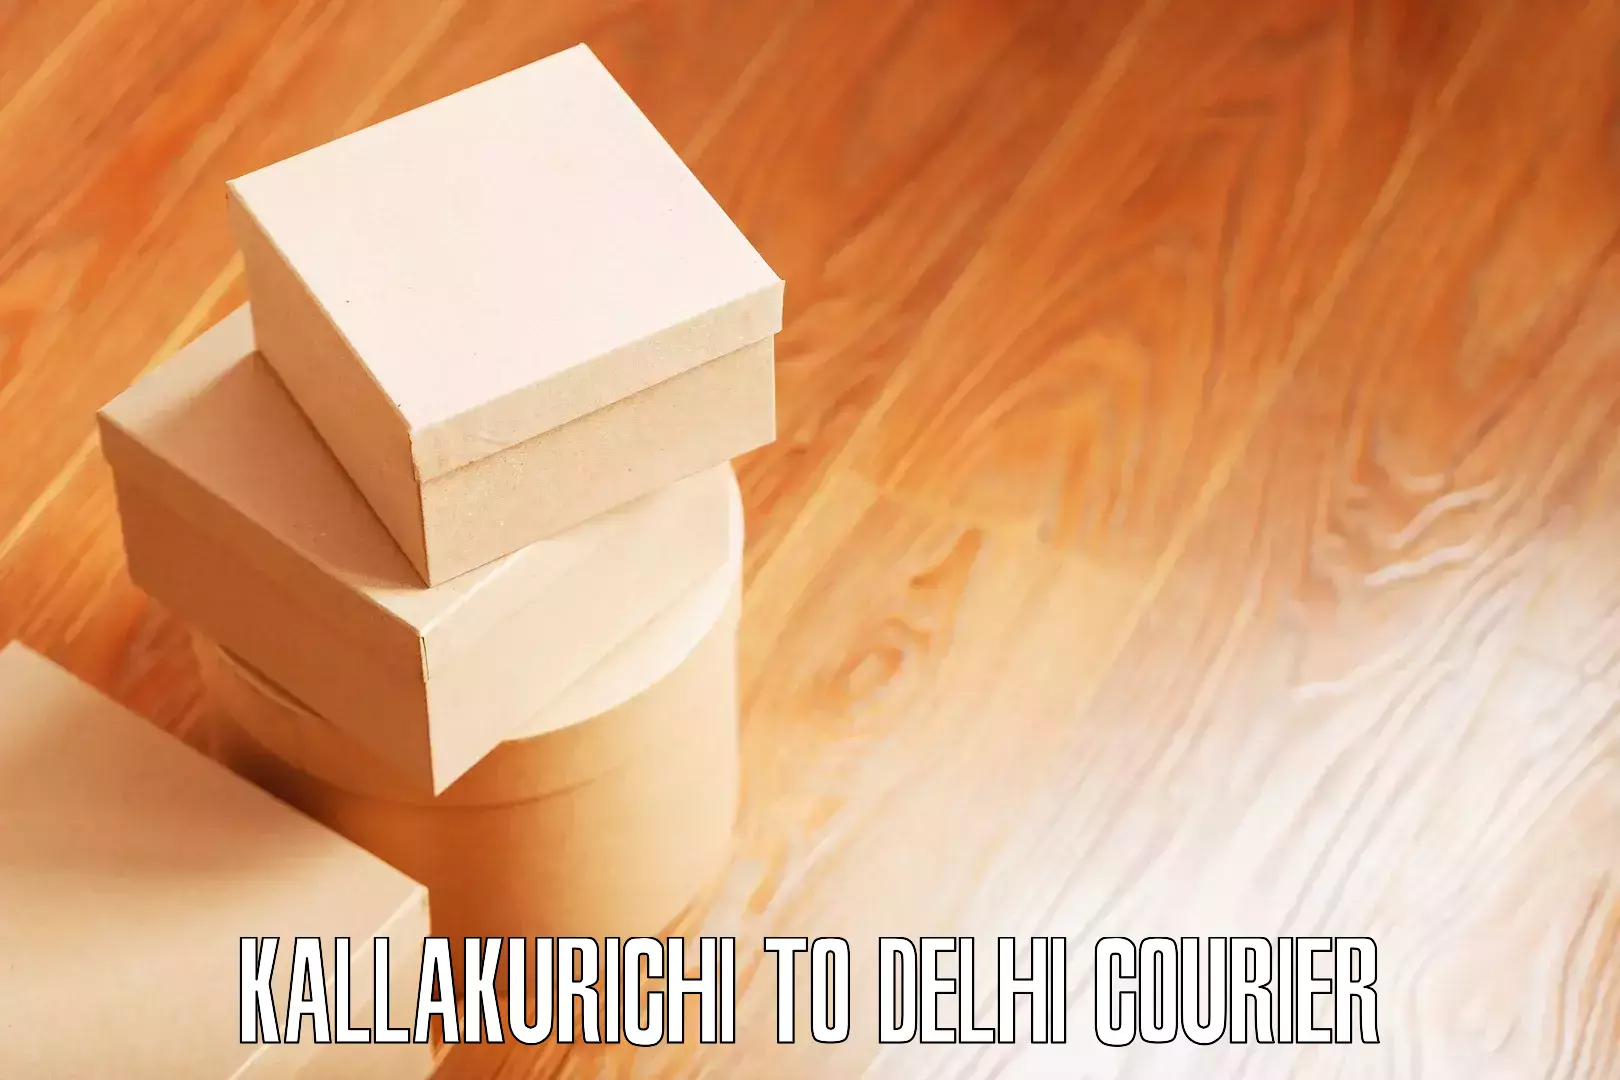 Door-to-door relocation services Kallakurichi to Jawaharlal Nehru University New Delhi